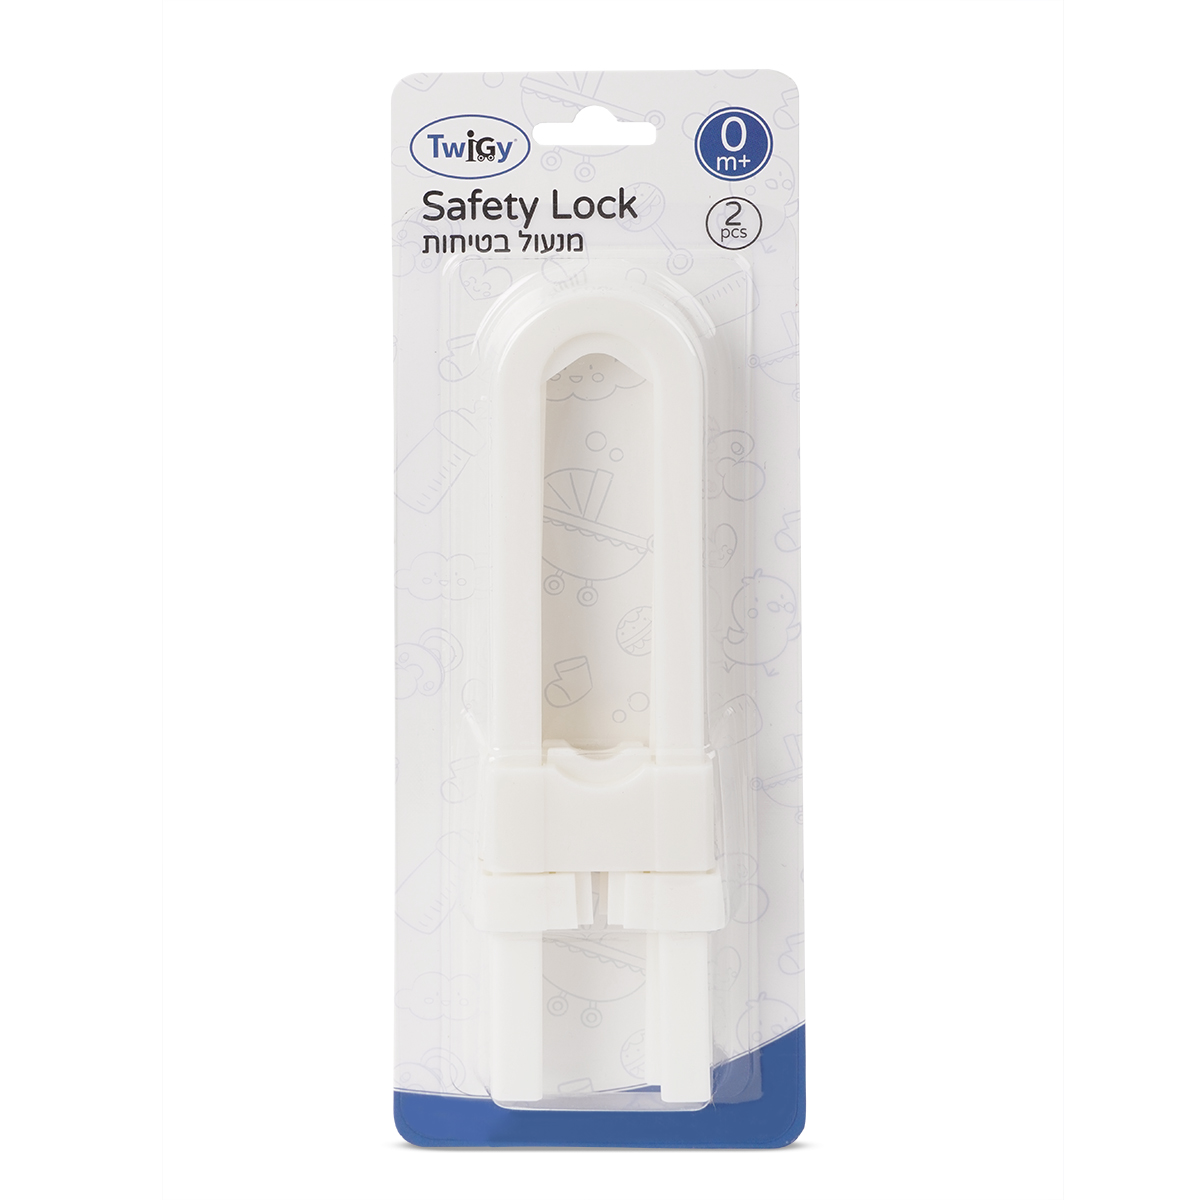 מנעול בטיחות טוויגי לבן – Twigy Safety Lock